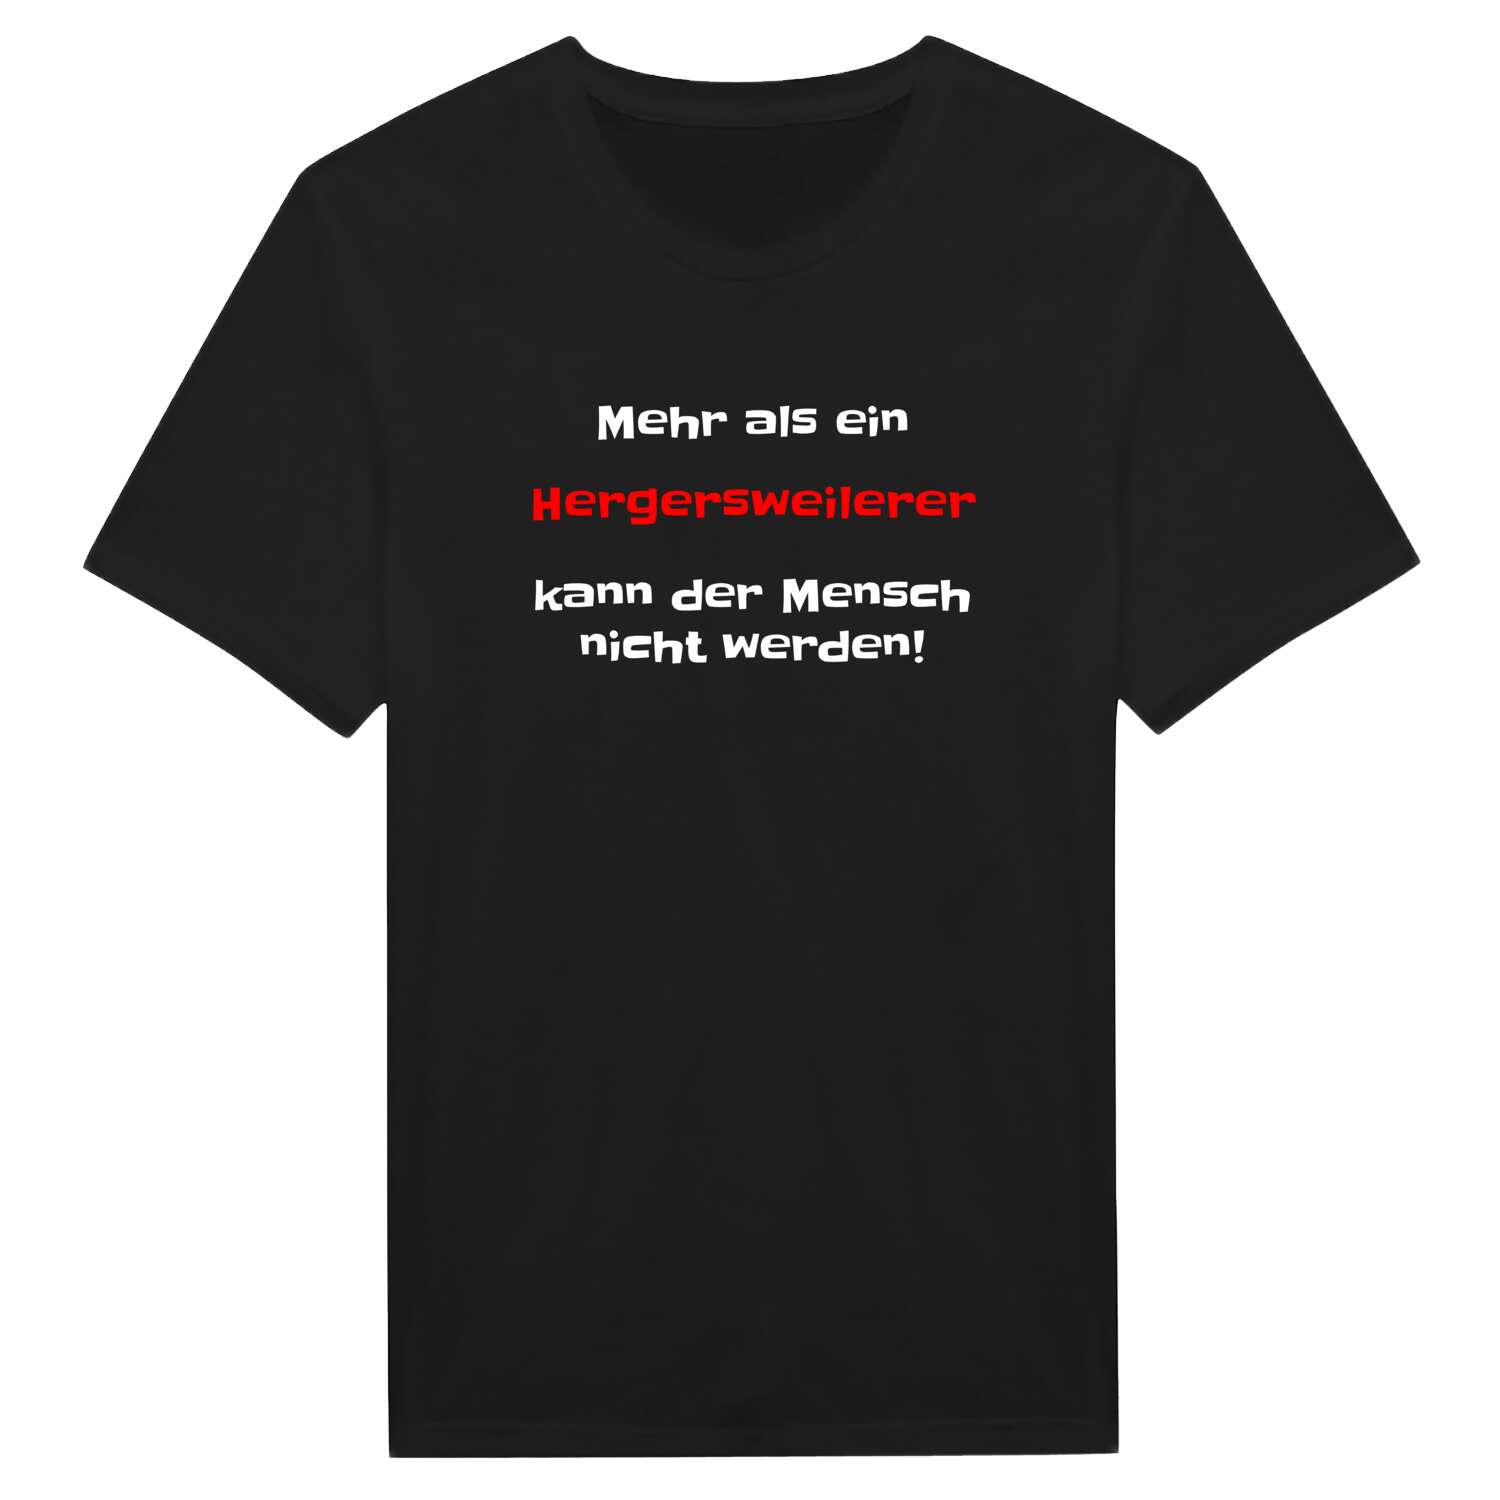 Hergersweiler T-Shirt »Mehr als ein«